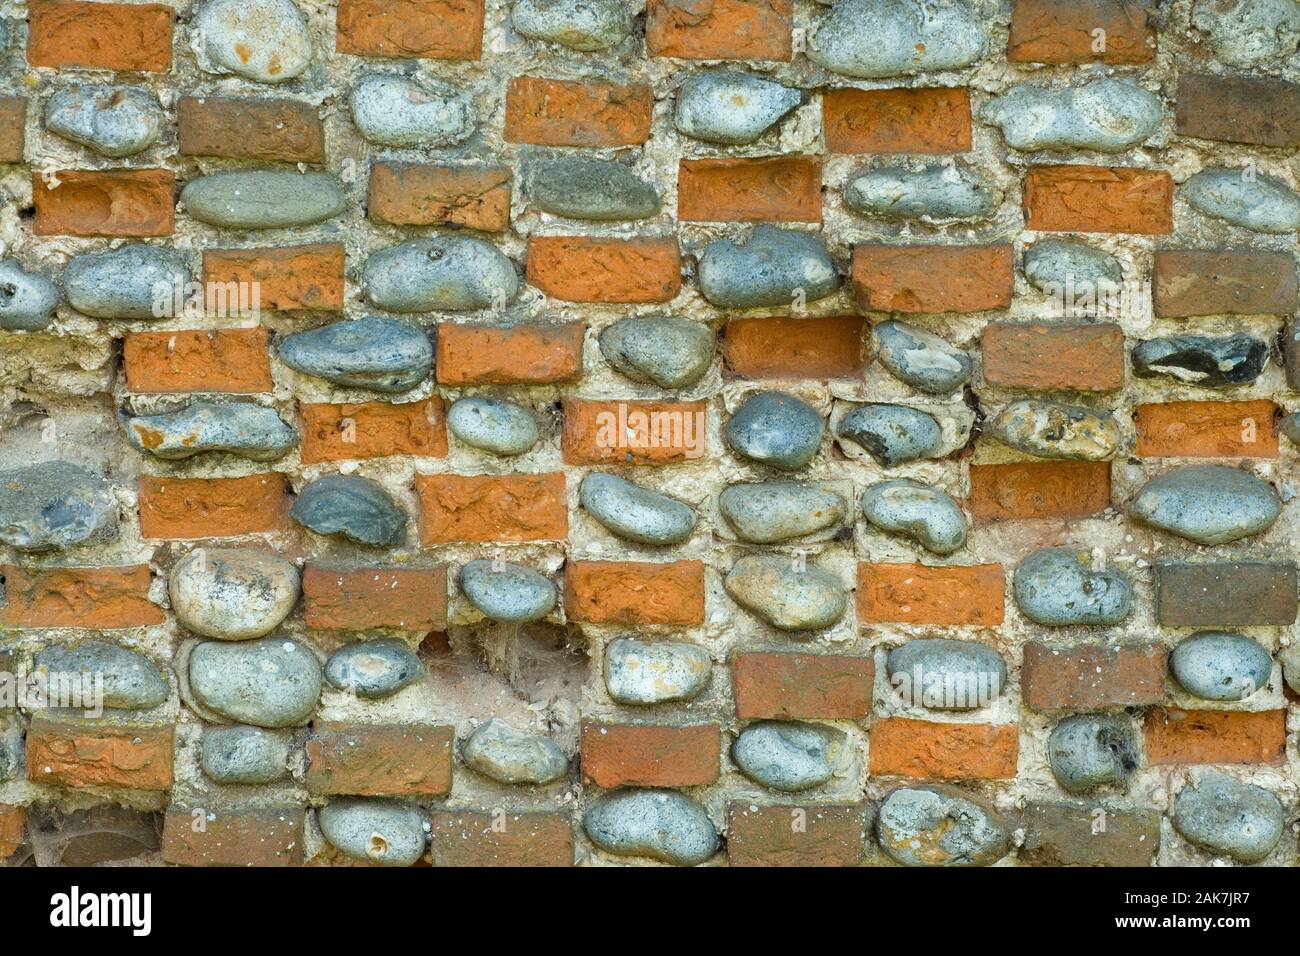 Flint & MUR DE BRIQUES dix-neuvième siècle construit composé de flints alternant avec des briques faites à la main localement. Mortier de chaux collée. Hickling, Norfolk. ROYAUME-UNI. Banque D'Images